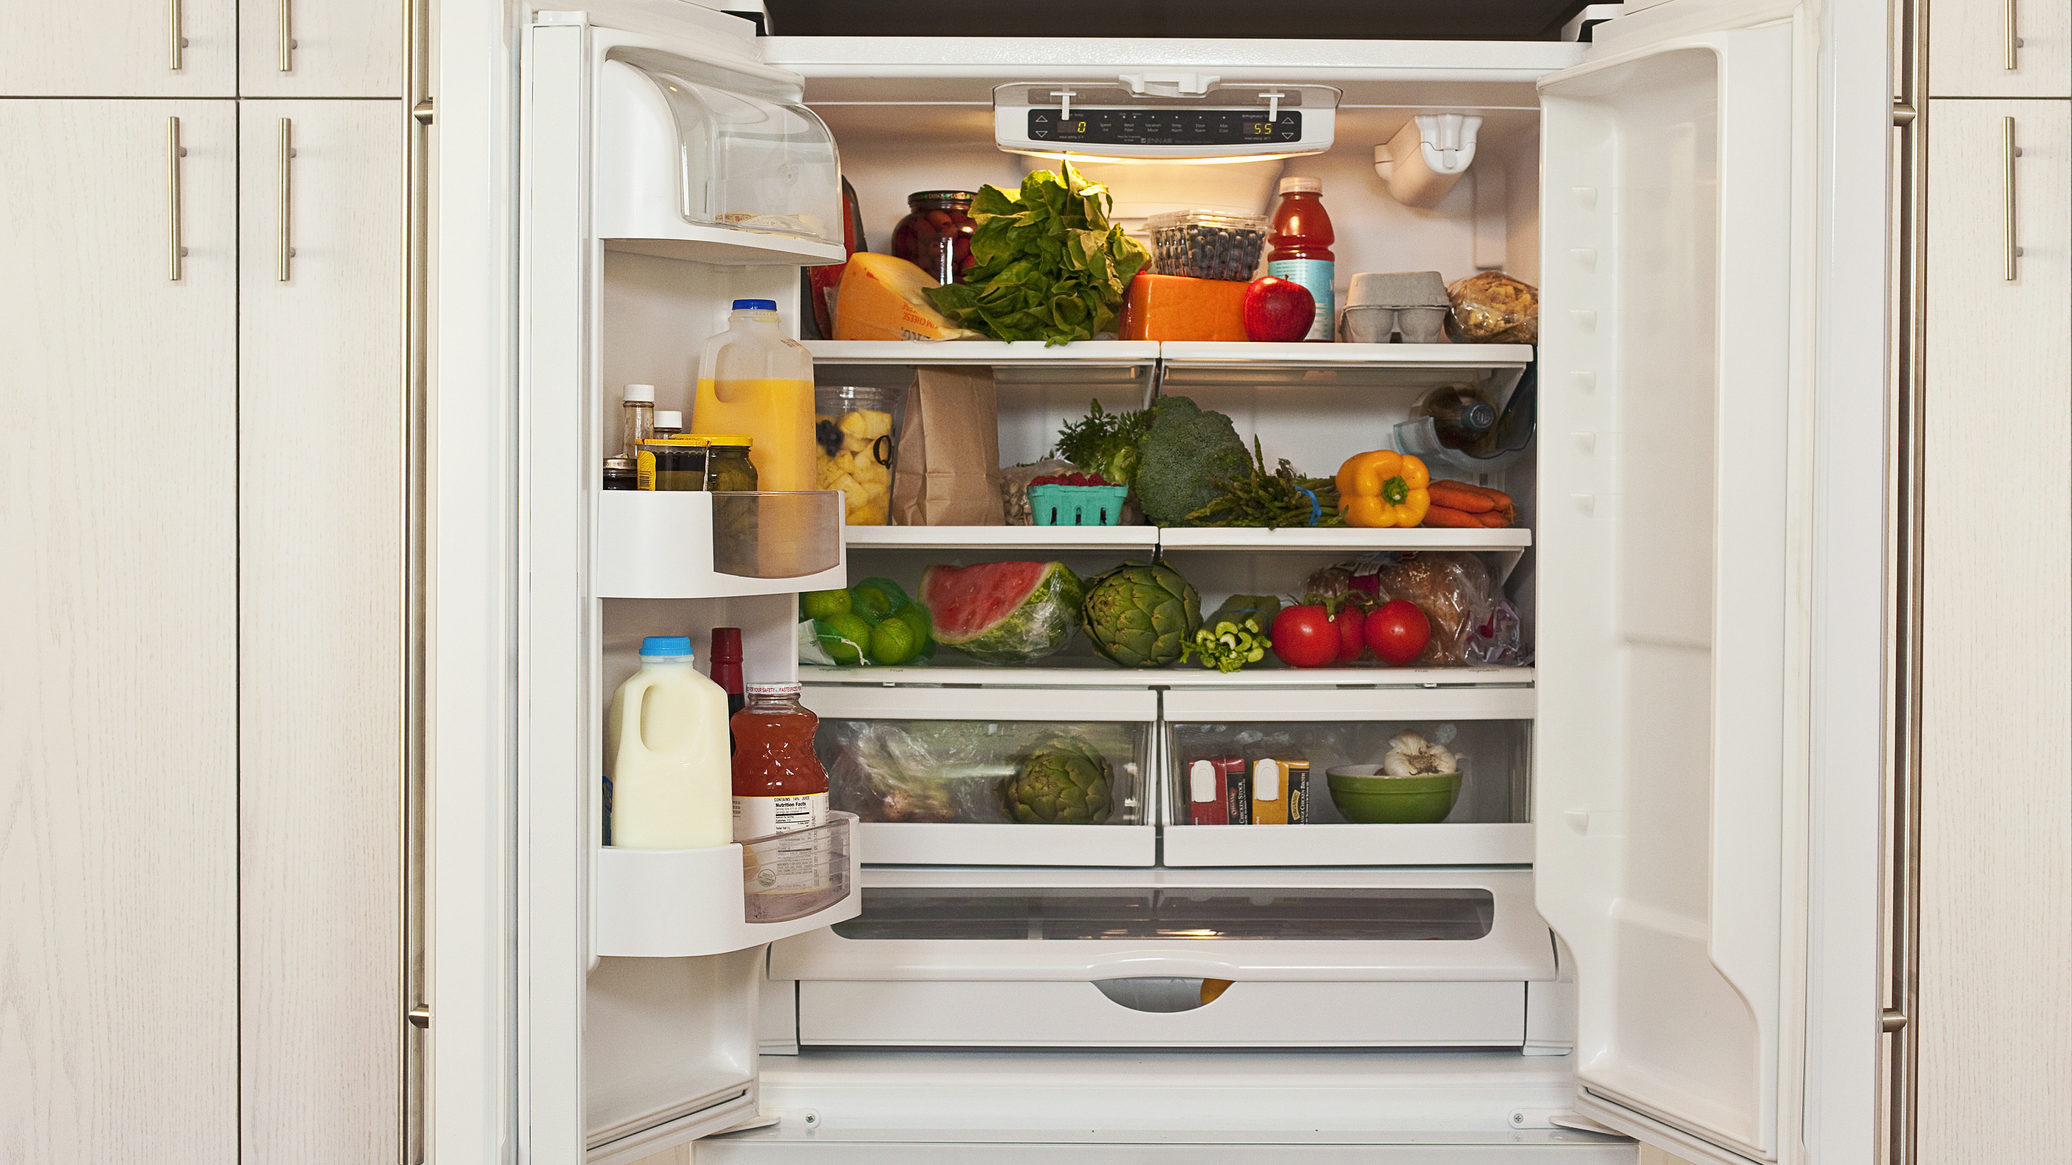 Ezek a leggyakoribb ételtárolási hibák, amiket a hűtőben elkövetünk